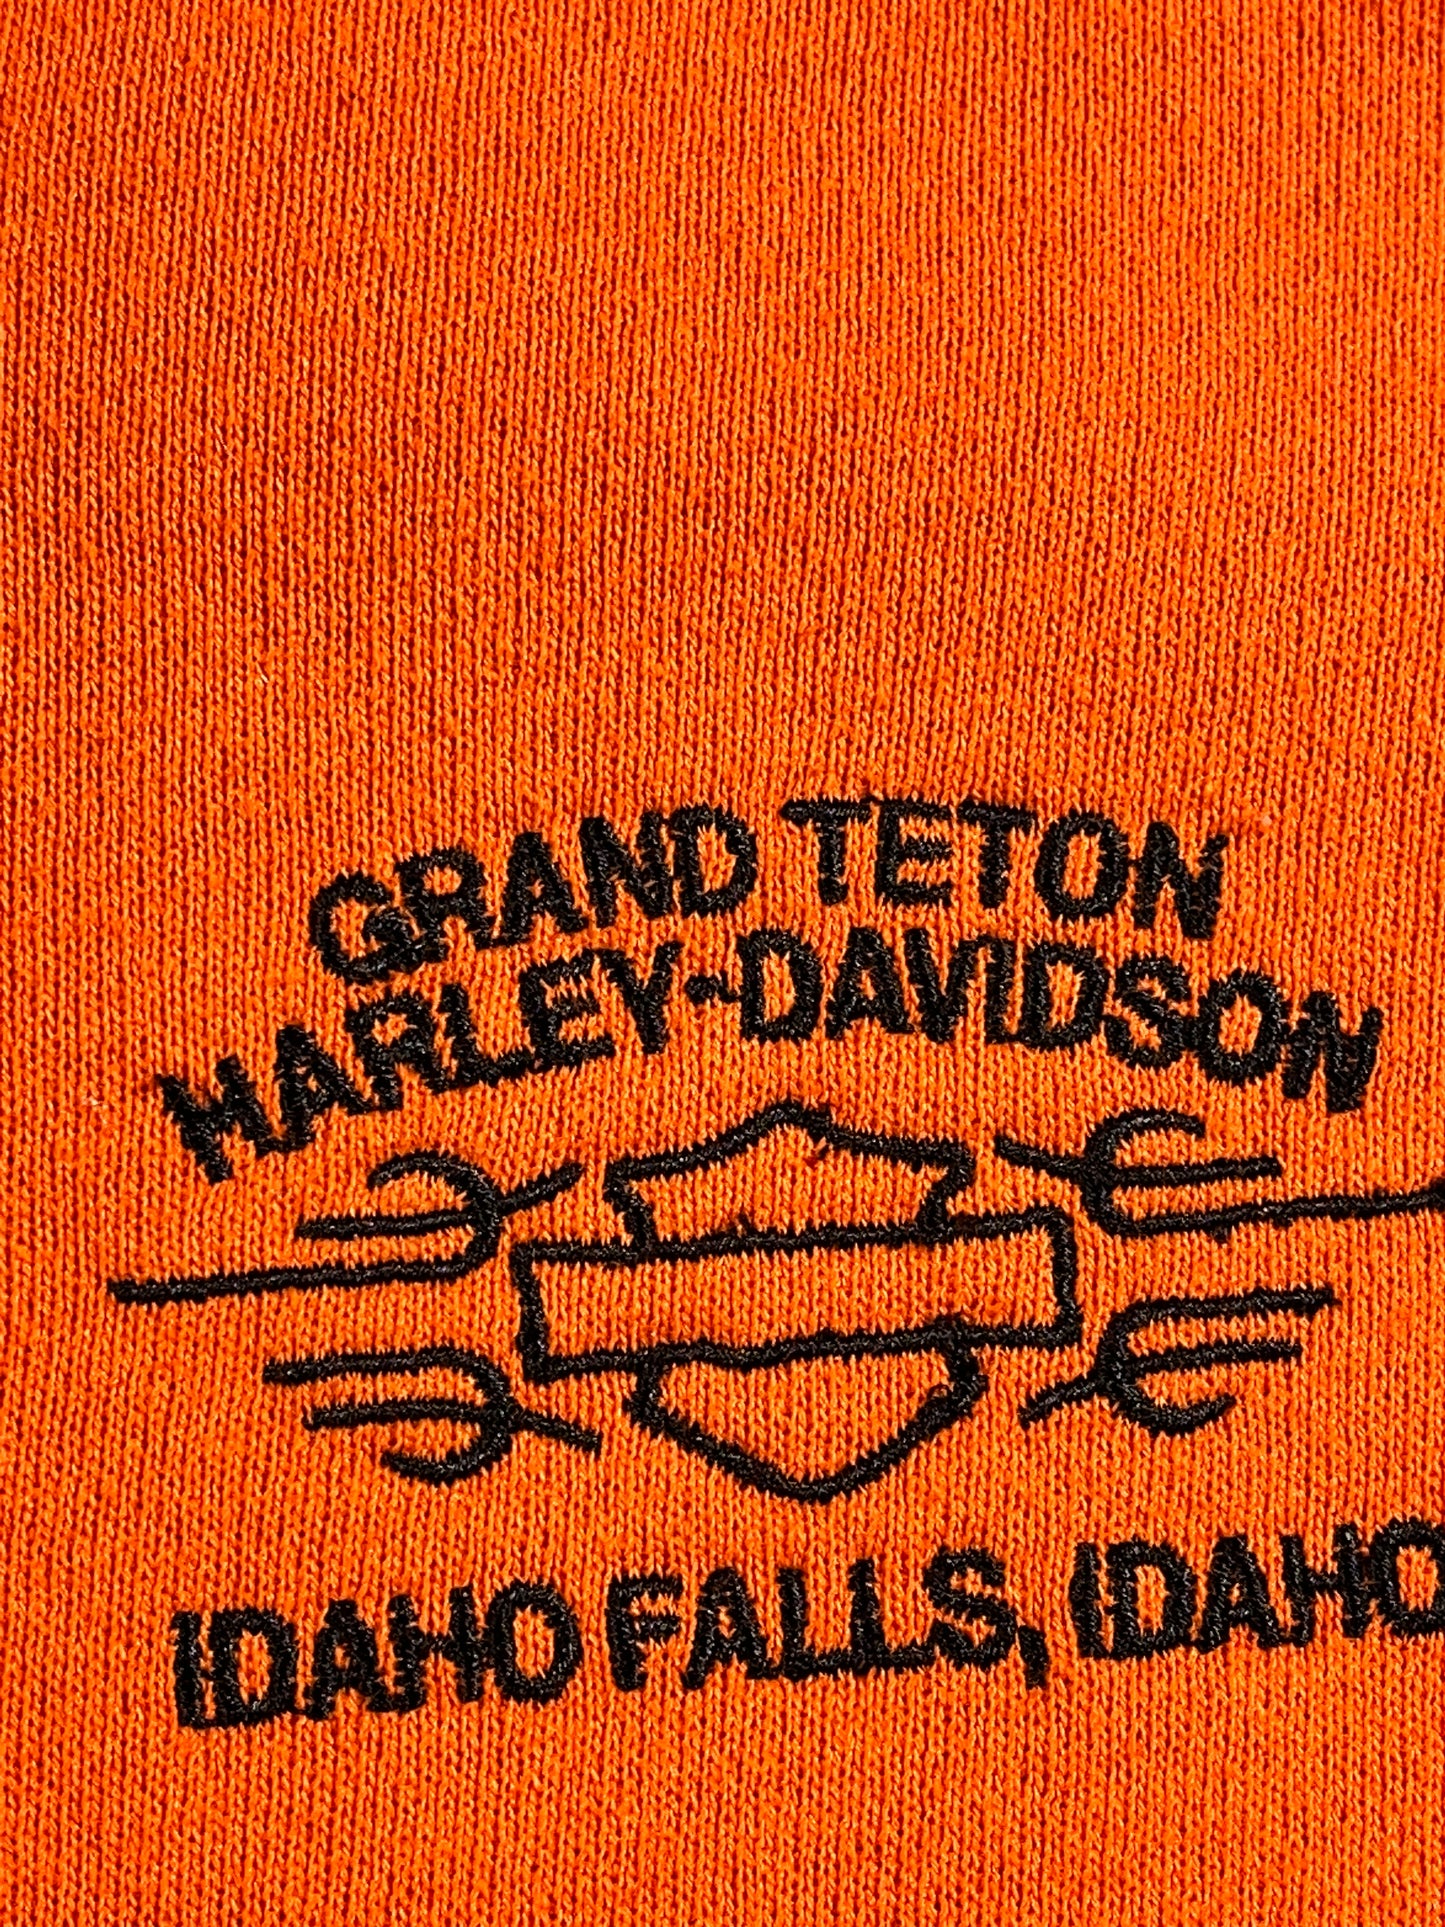 Vintage Harley Davidson Crewneck Embroidered